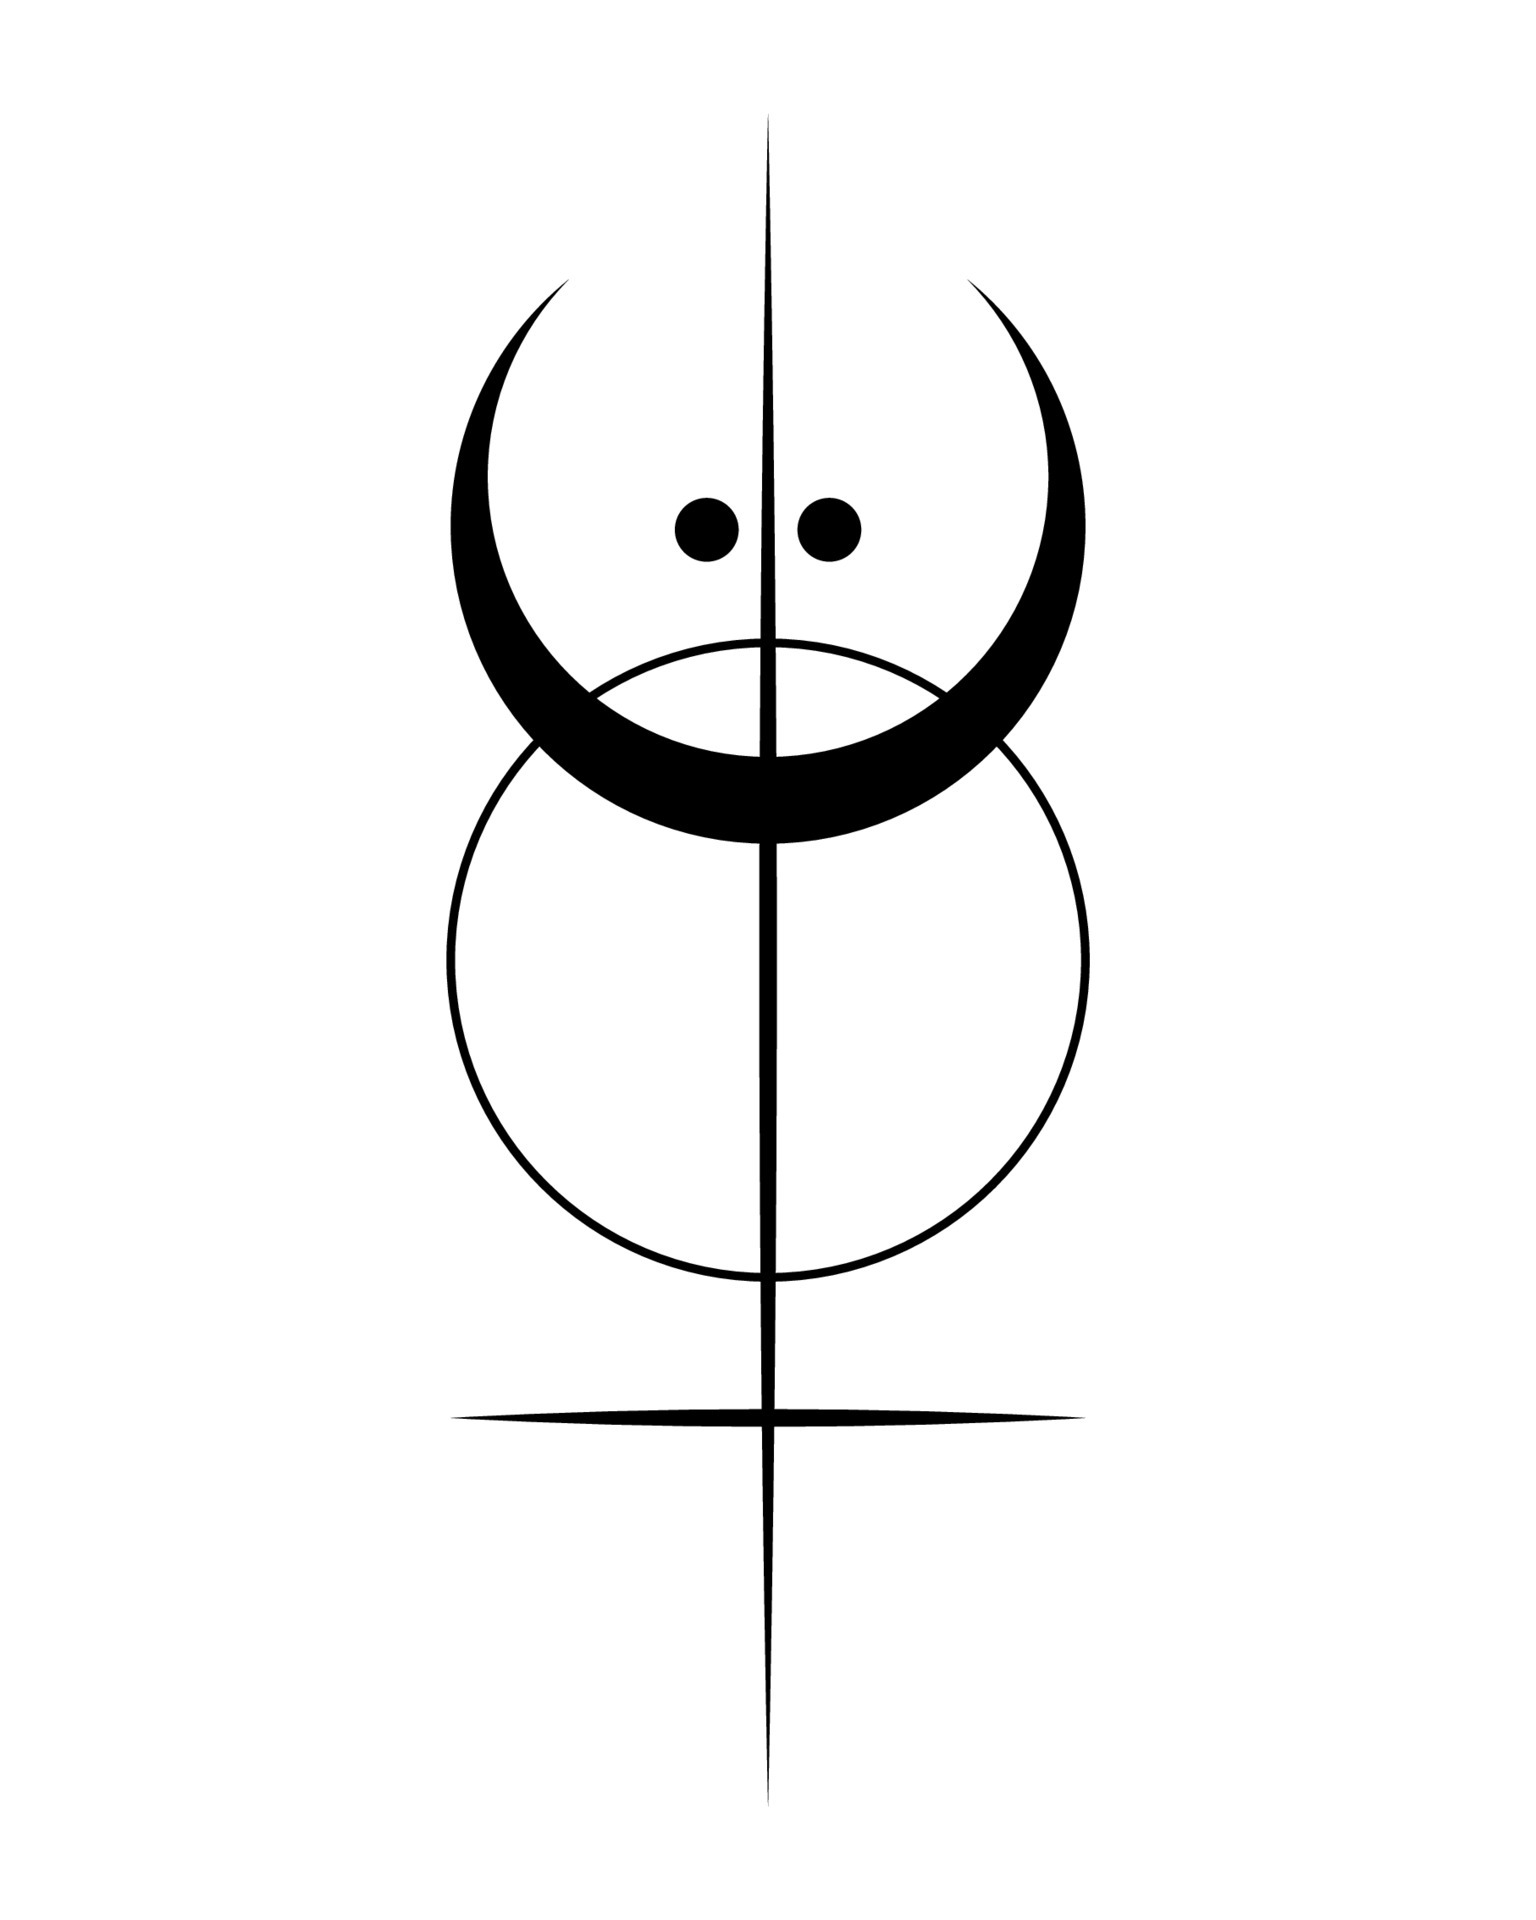 géométrie sacrée, logo de tatouage noir avec soleil, croissant de lune,  croix ésotérique alchimique, talisman céleste magique mystique.  illustration de vecteur d'objet d'occultisme spirituel isolé sur fond blanc  6457792 Art vectoriel chez